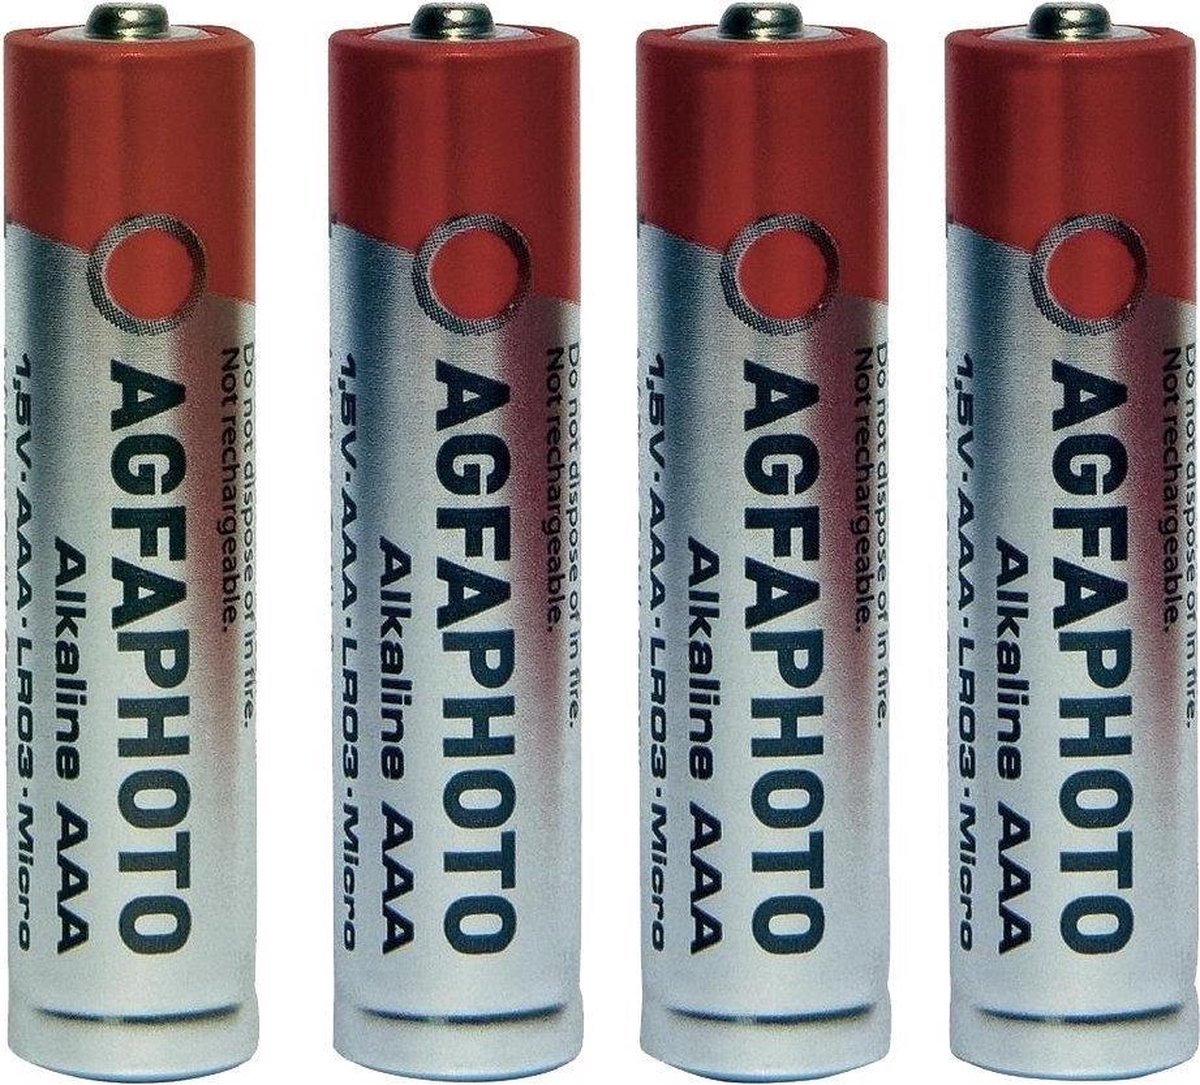 AgfaPhoto batterij Alkaline Power -AAA LR03 Micro 4St.